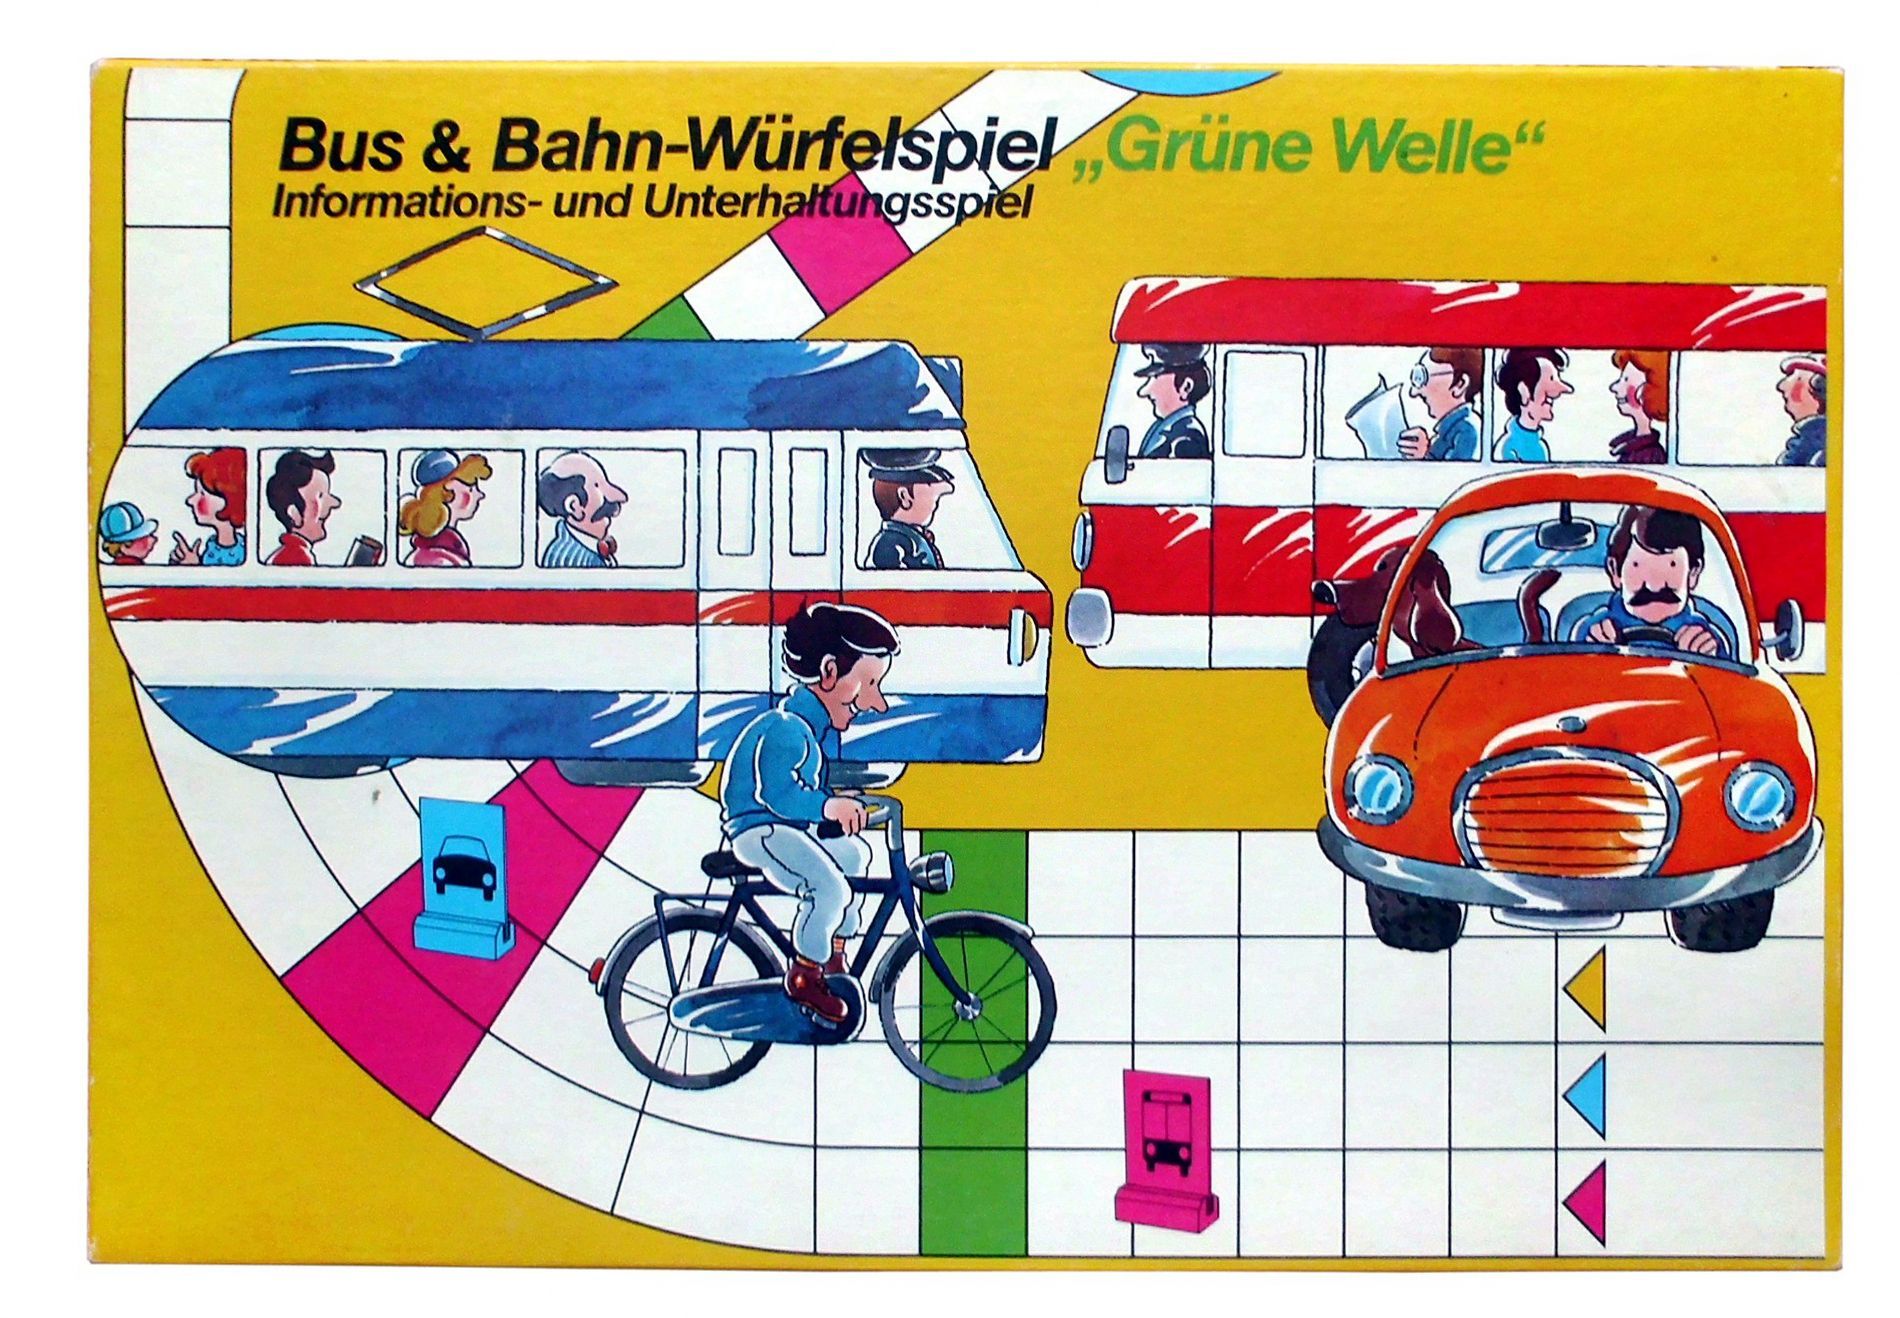 Bus- und Bahn-Würfelspiel "Grüne Welle"